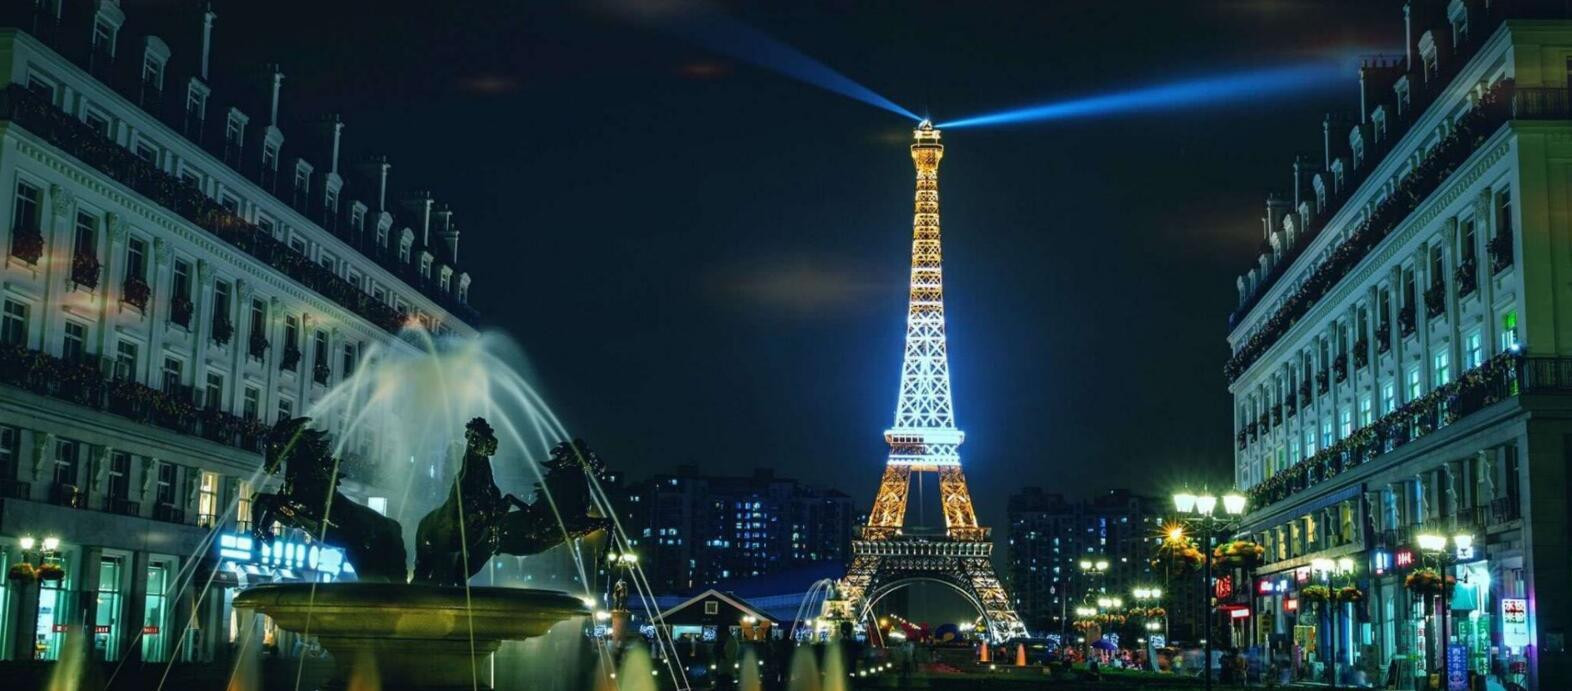 Tốn 1 tỷ USD để xây dựng, quảng bá rầm rộ kỳ vọng trở thành điểm du lịch hot toàn châu Á: dự án “Paris phiên bản 2&quot; sau 17 năm giờ ra sao? - Ảnh 6.